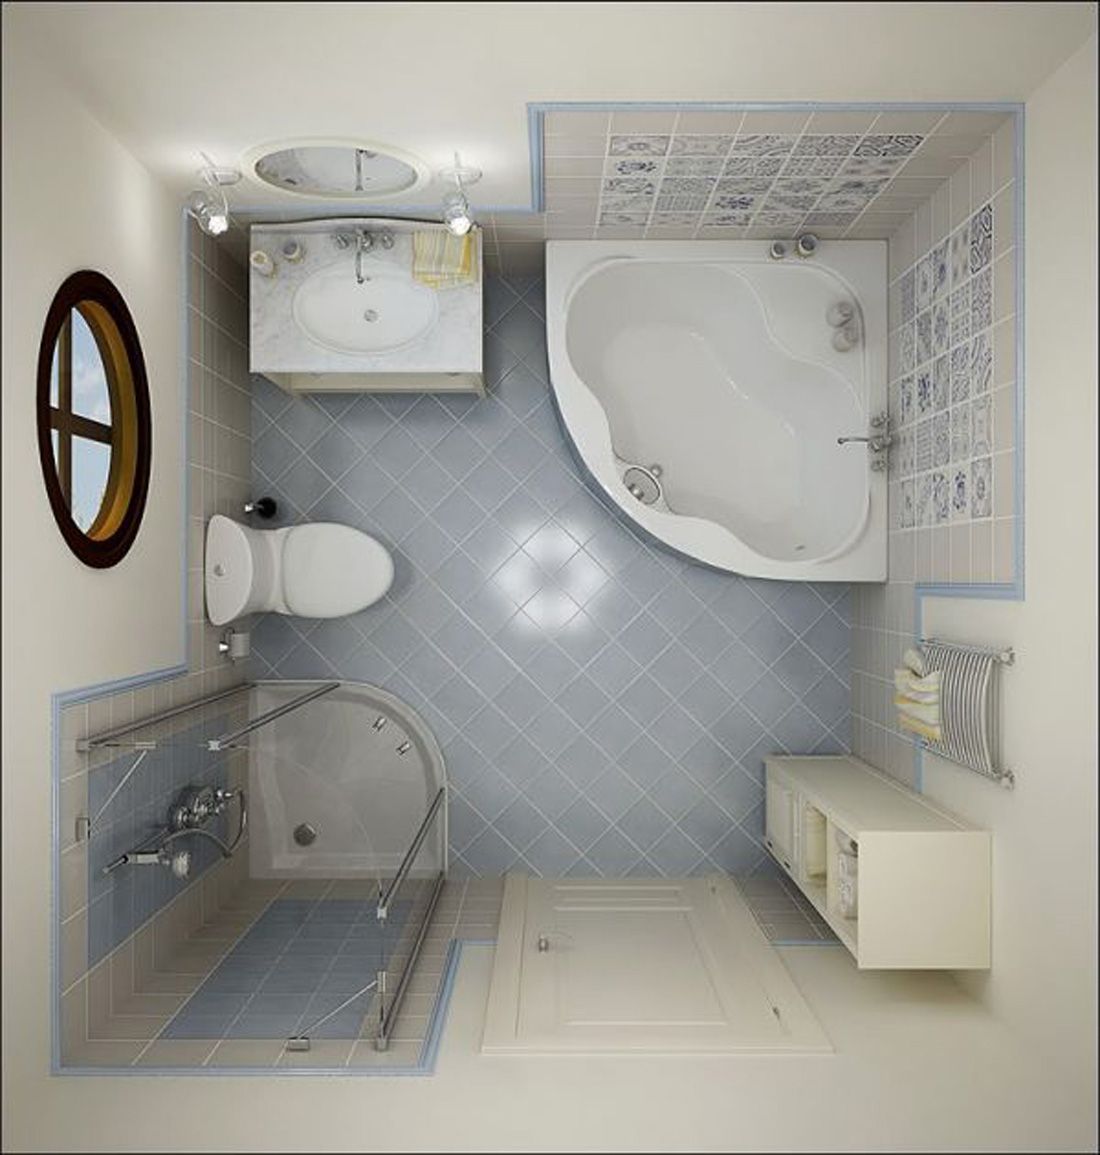 desain kamar mandi murah<br />